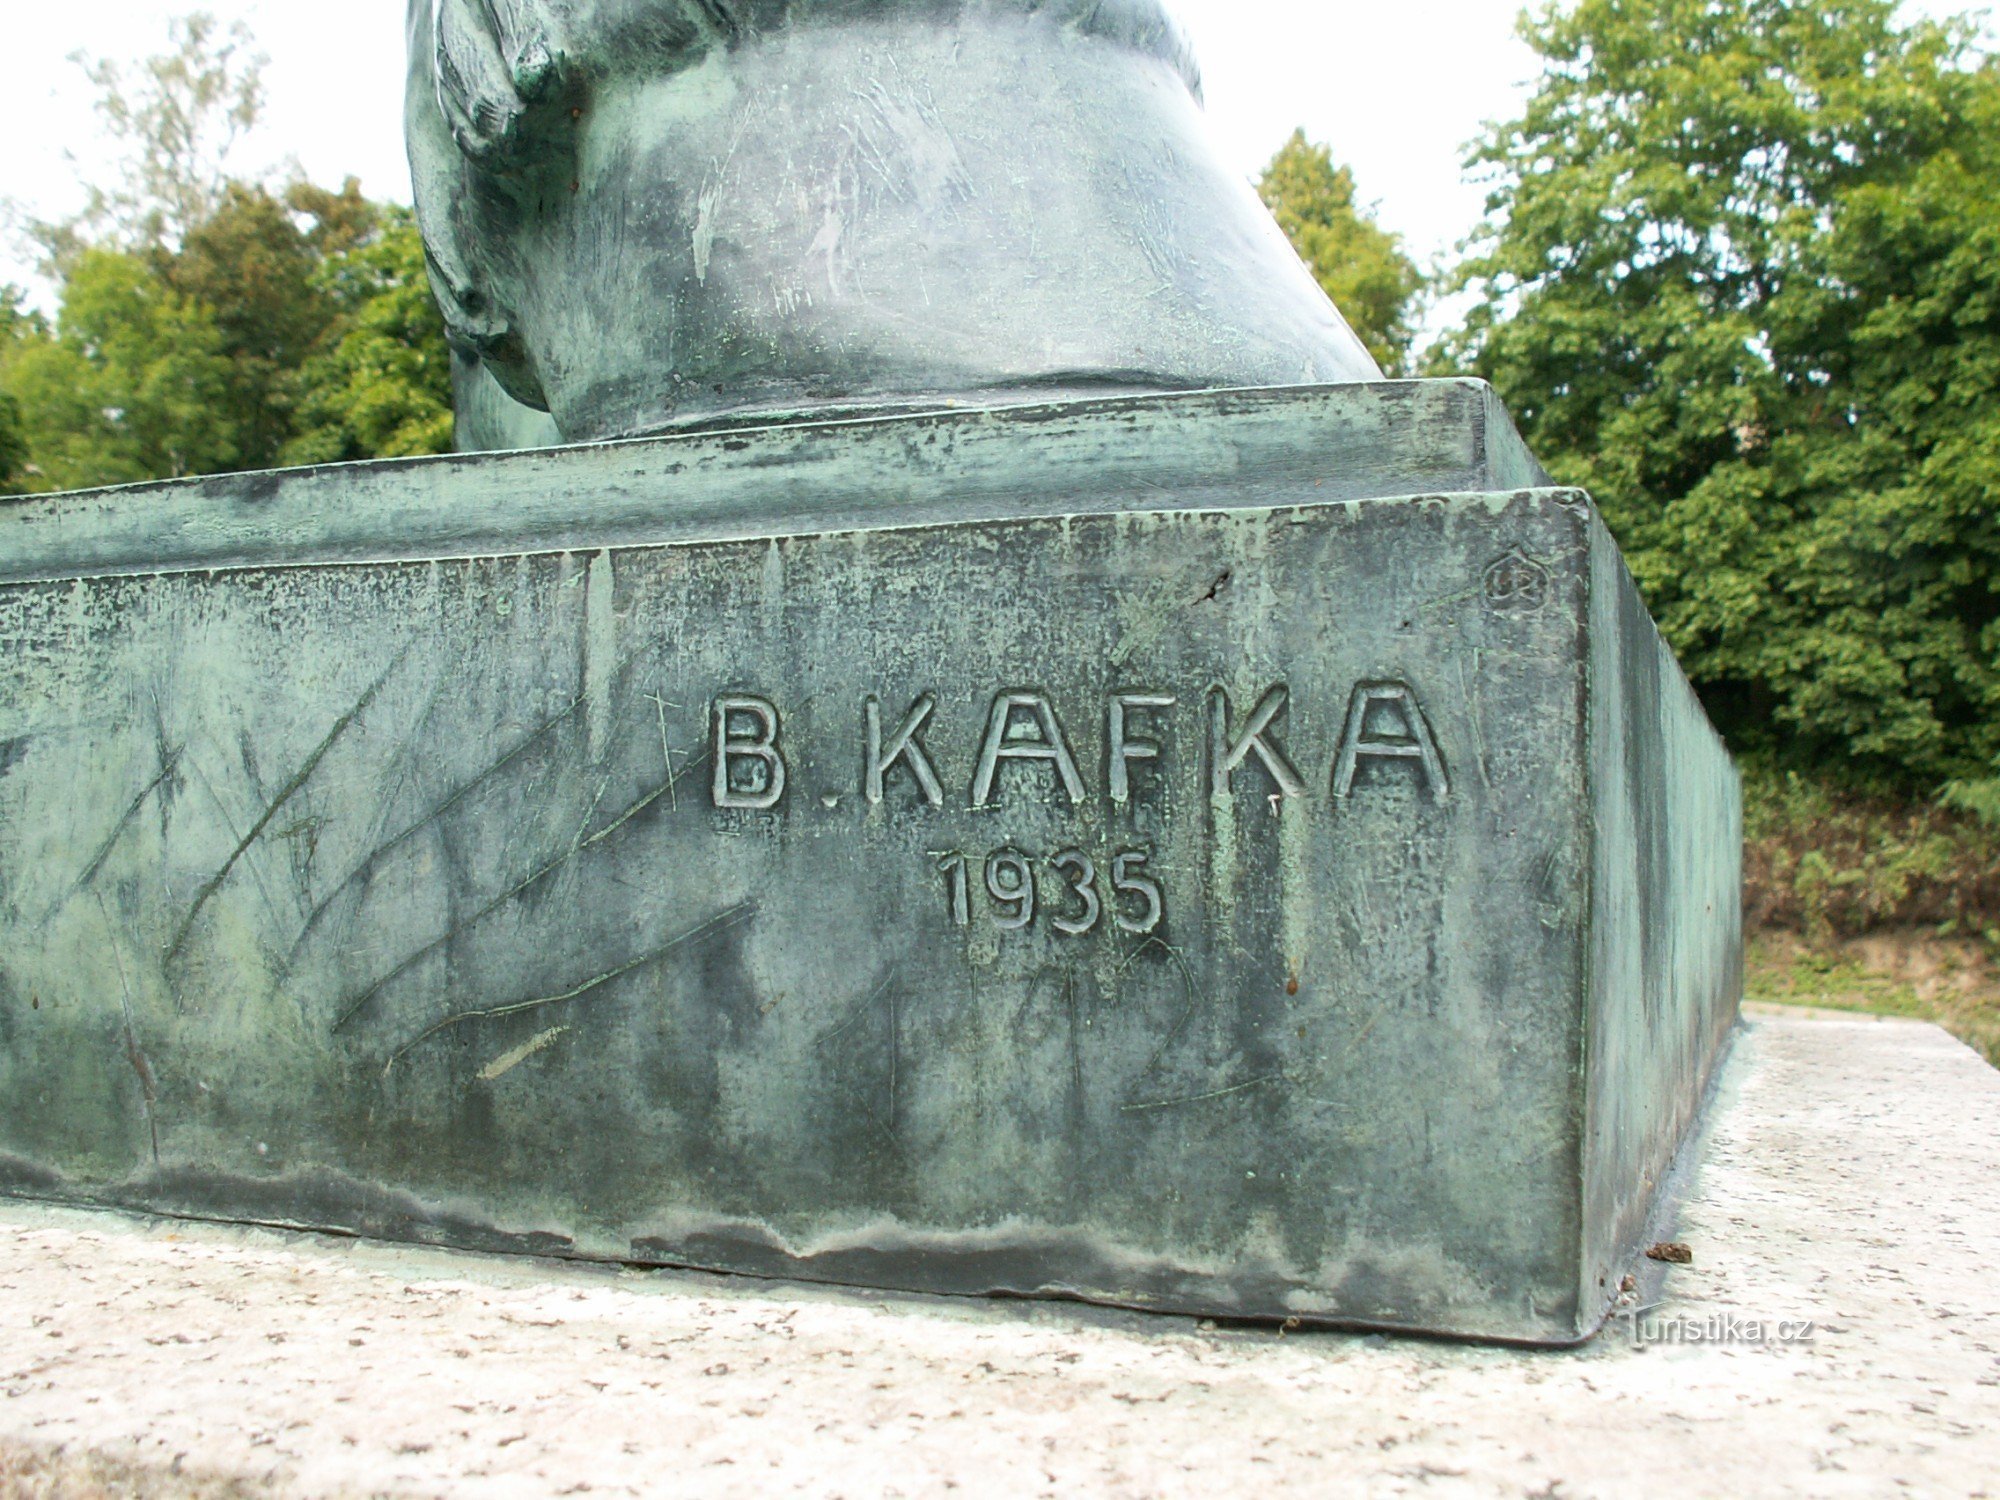 Detaliu al statuii cu numele autorului acesteia